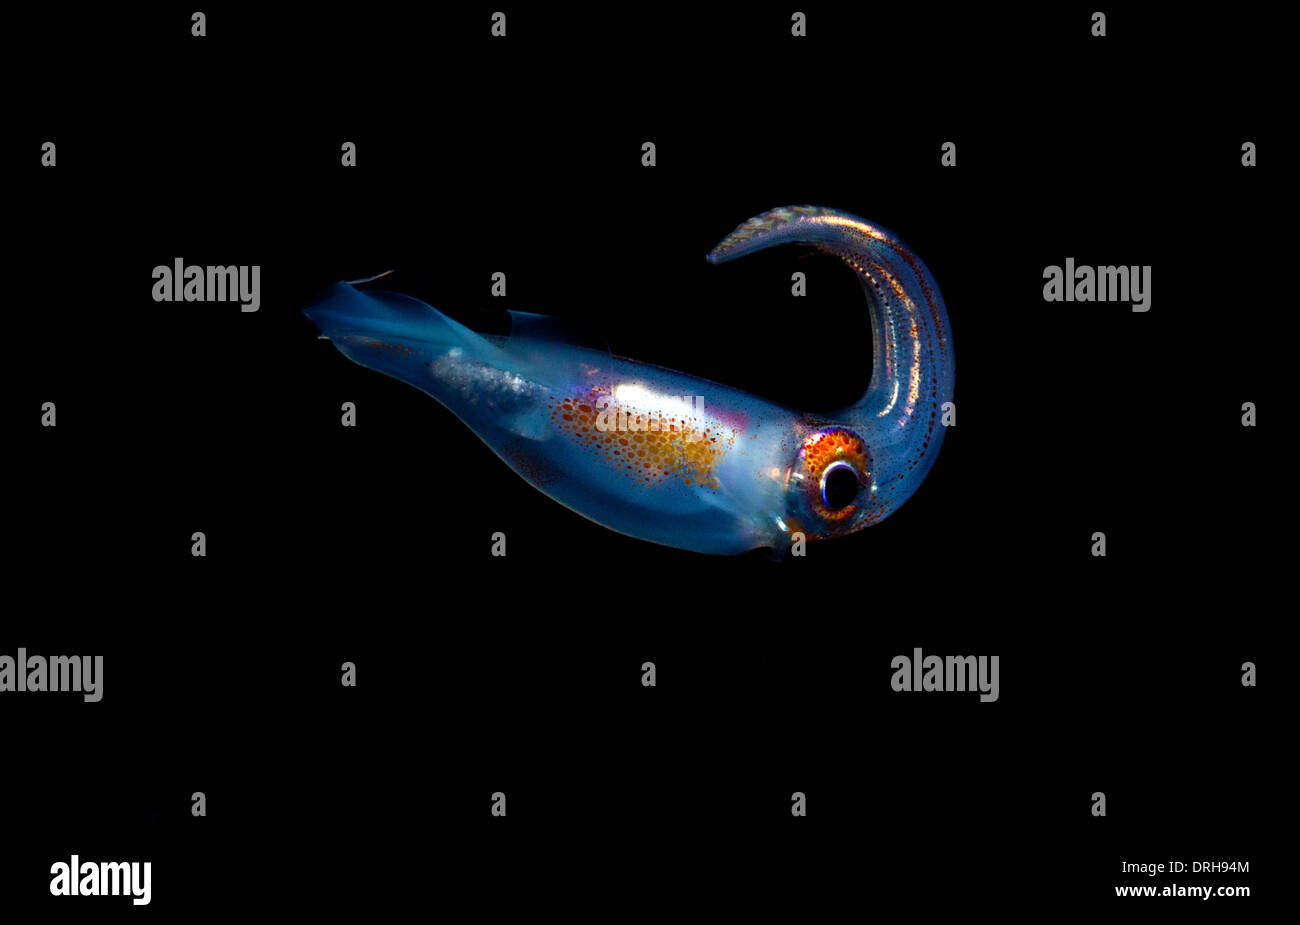 Un calamar pelágico descansa inmóvil en la columna de agua durante la noche Foto de stock